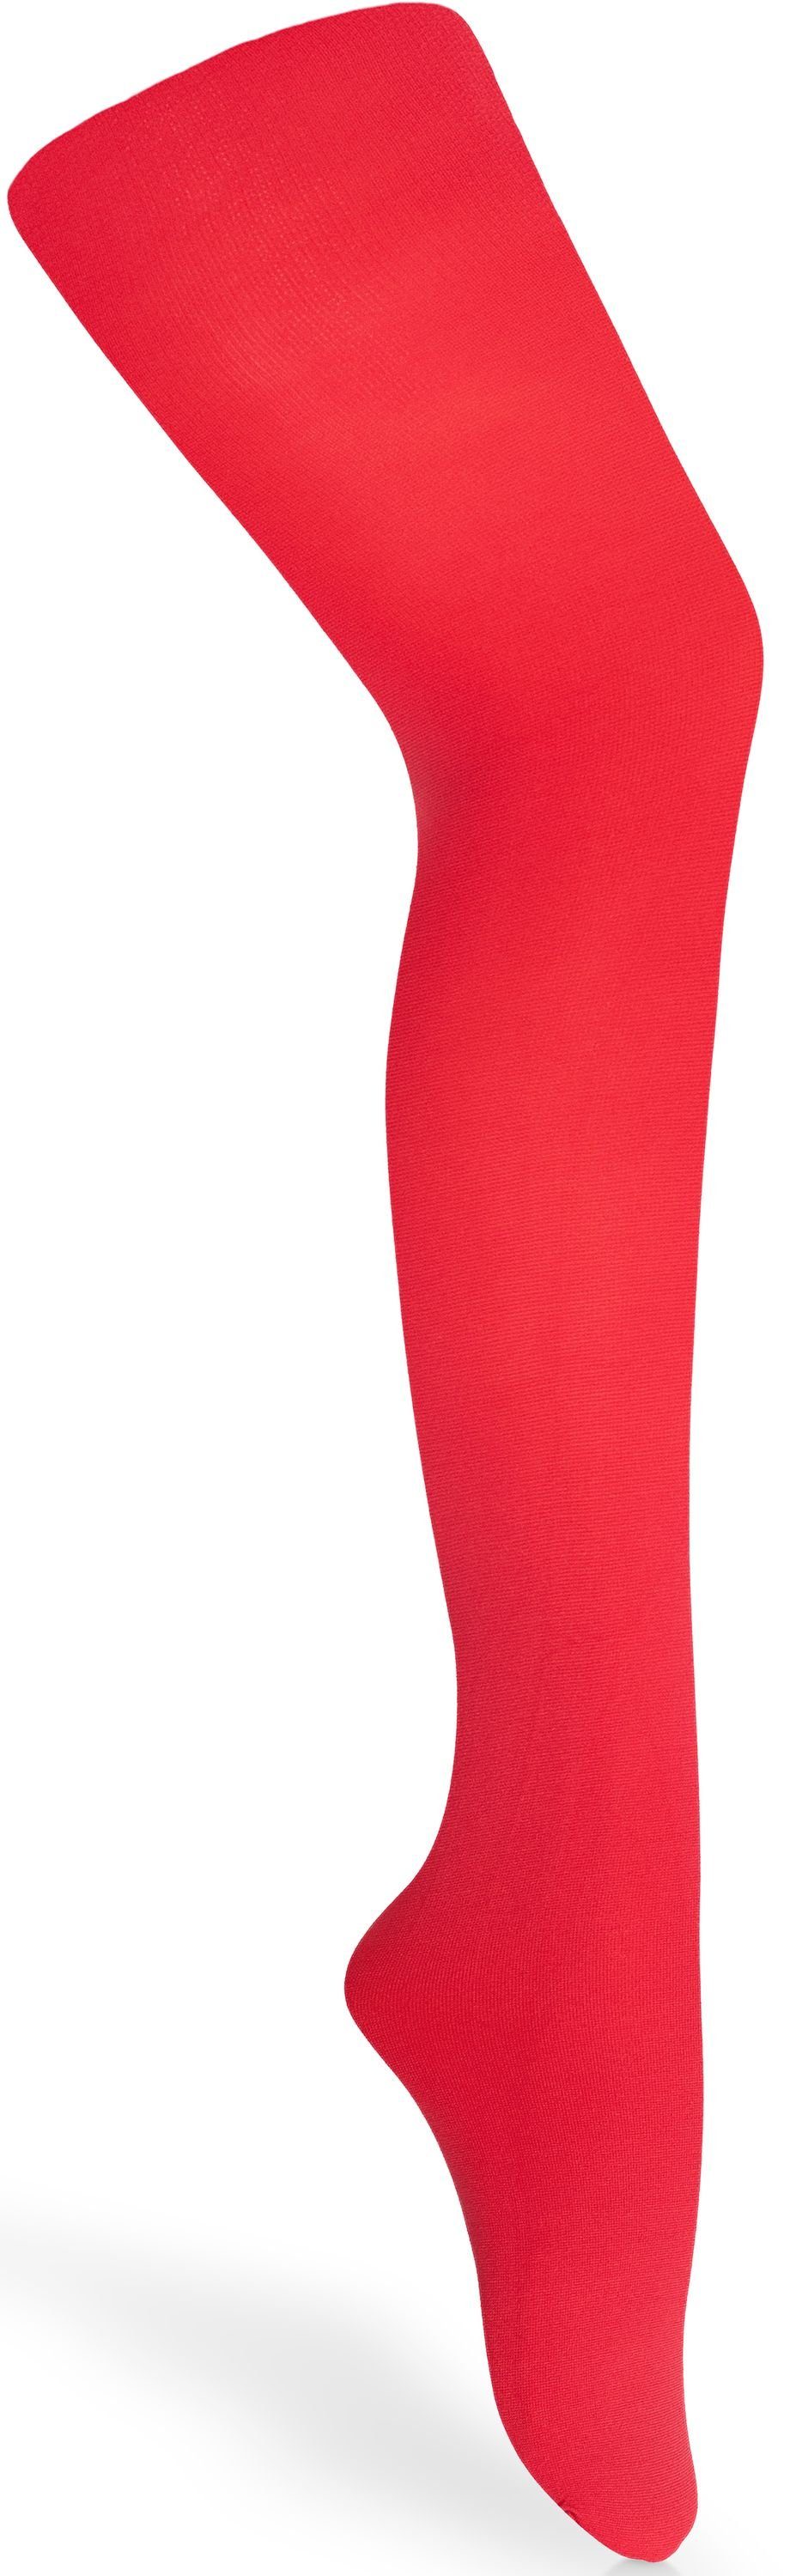 Merry Style Kinder Strumpfhose DEN Microfaser (1 60 60 Rot für St) Strumpfhose Mädchen DEN